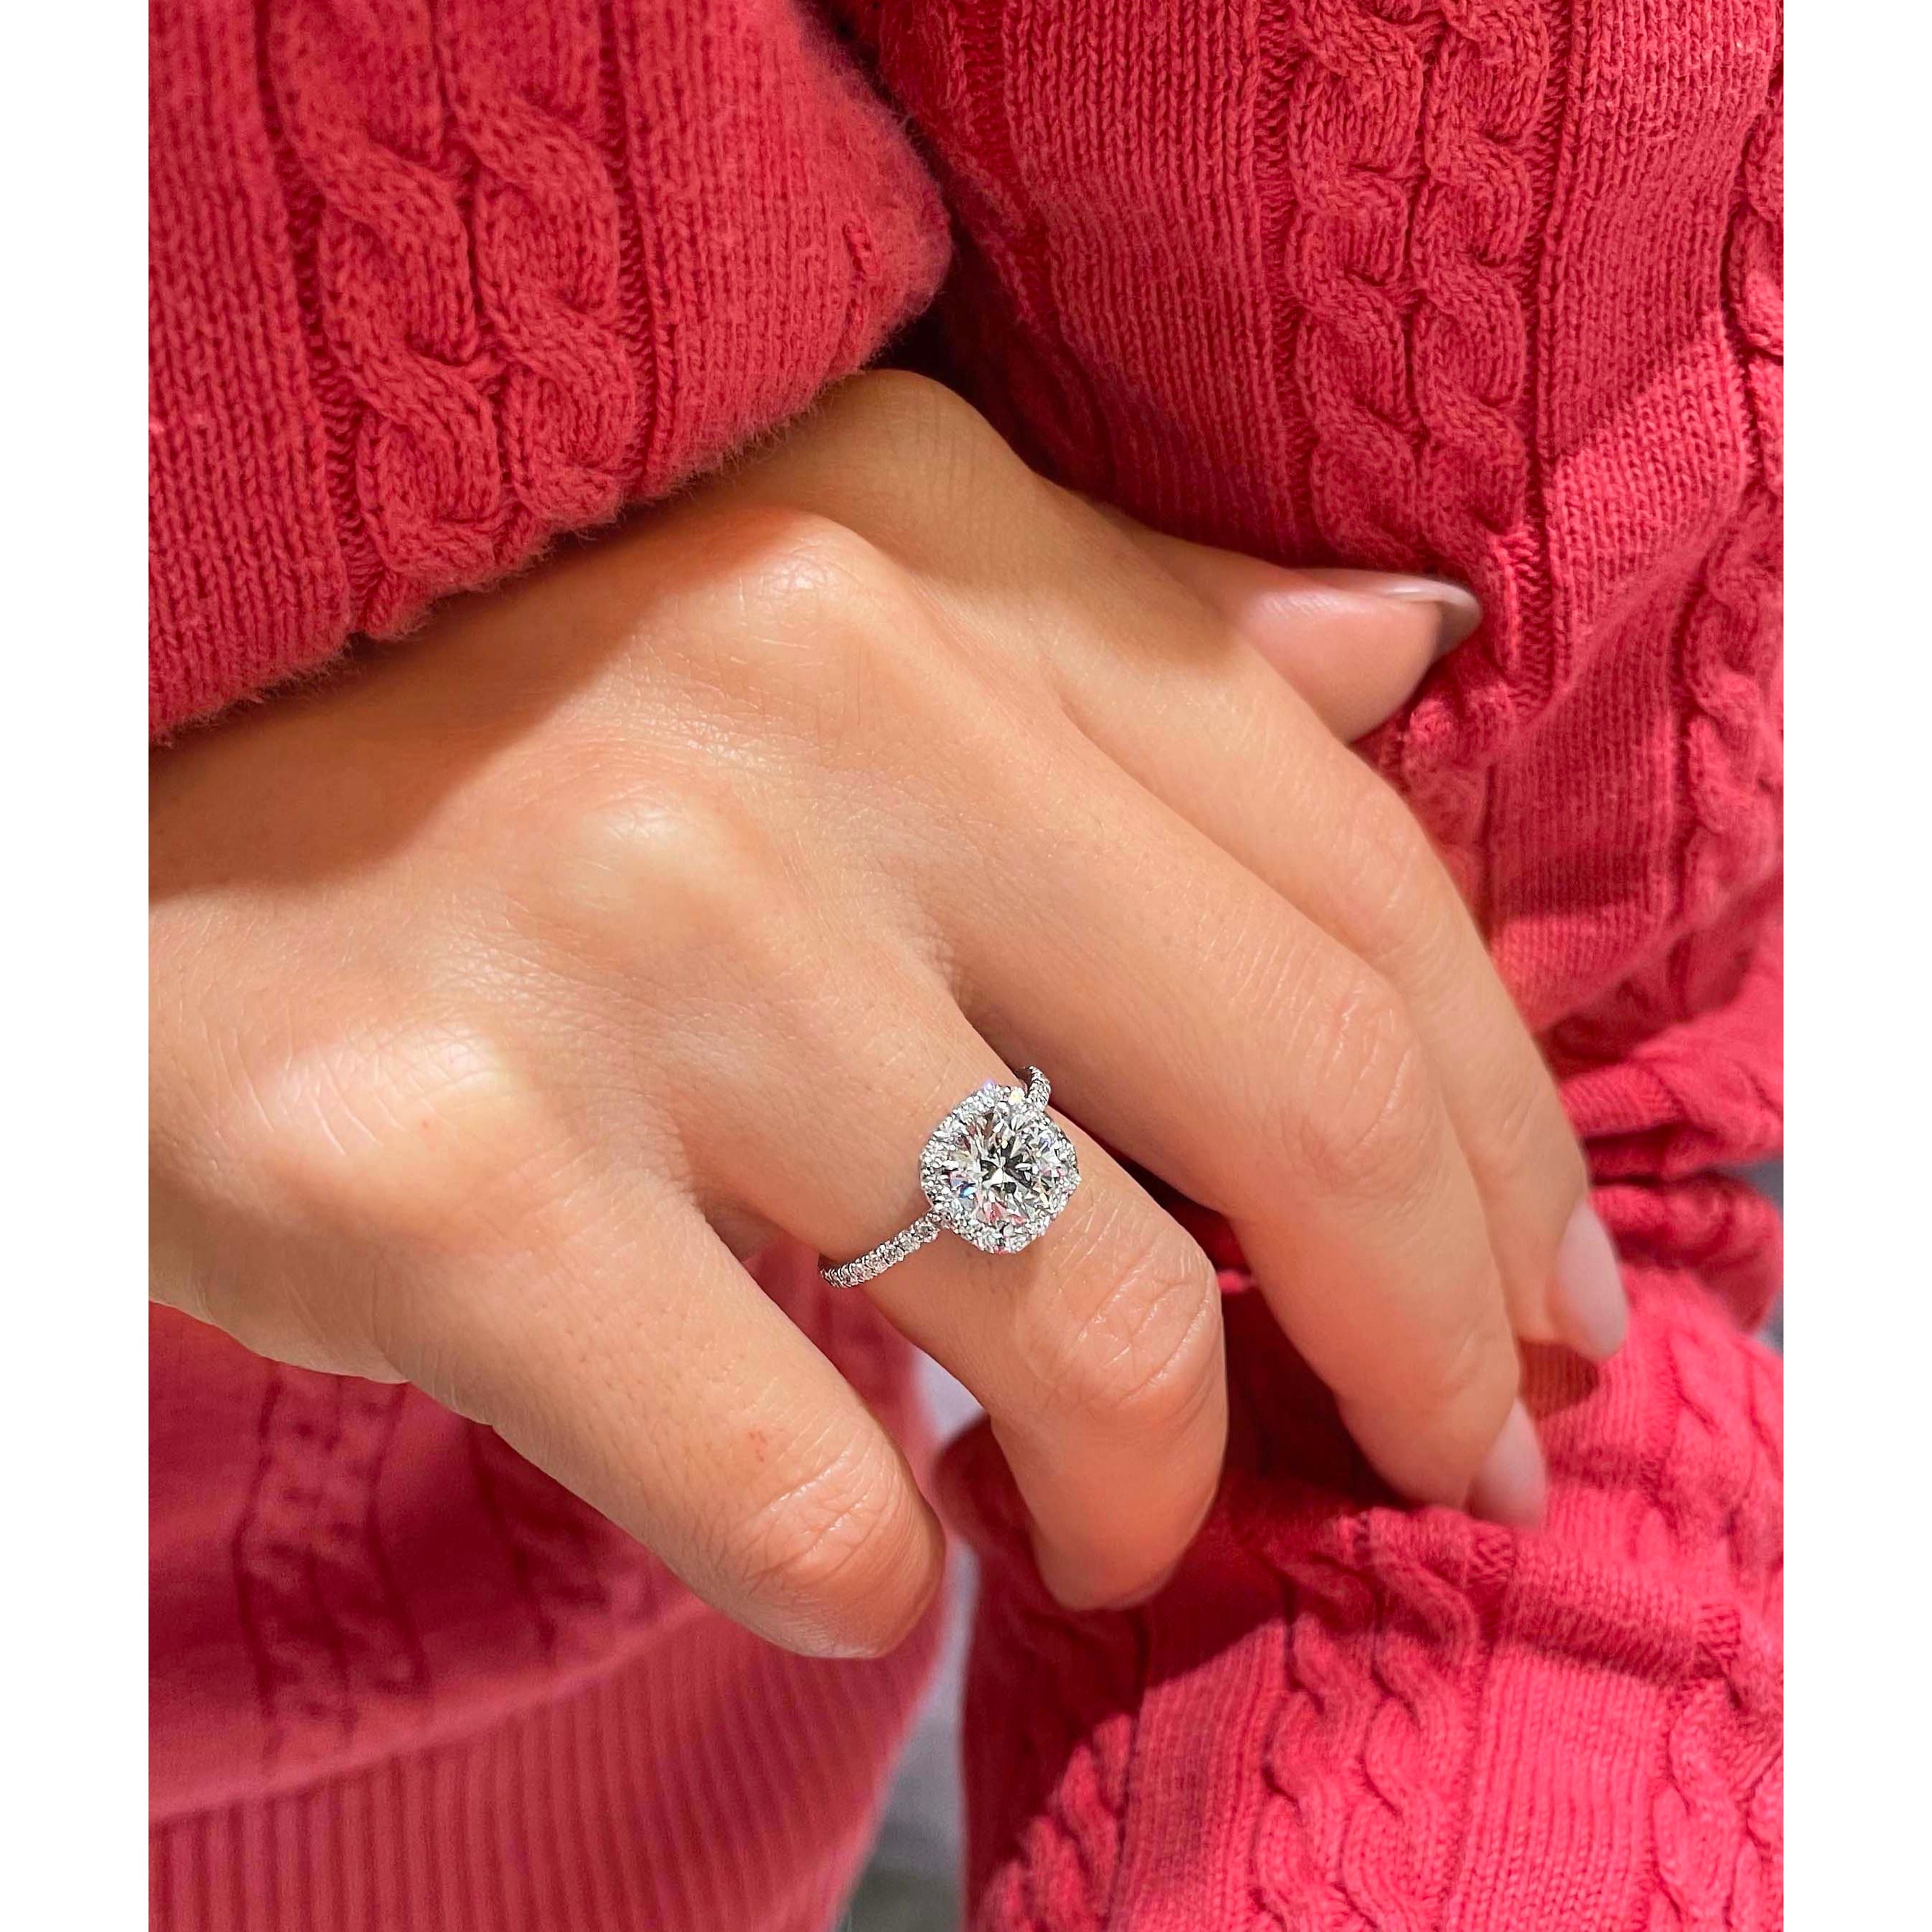 Claudia Diamond Engagement Ring   (1.35 Carat) -Platinum